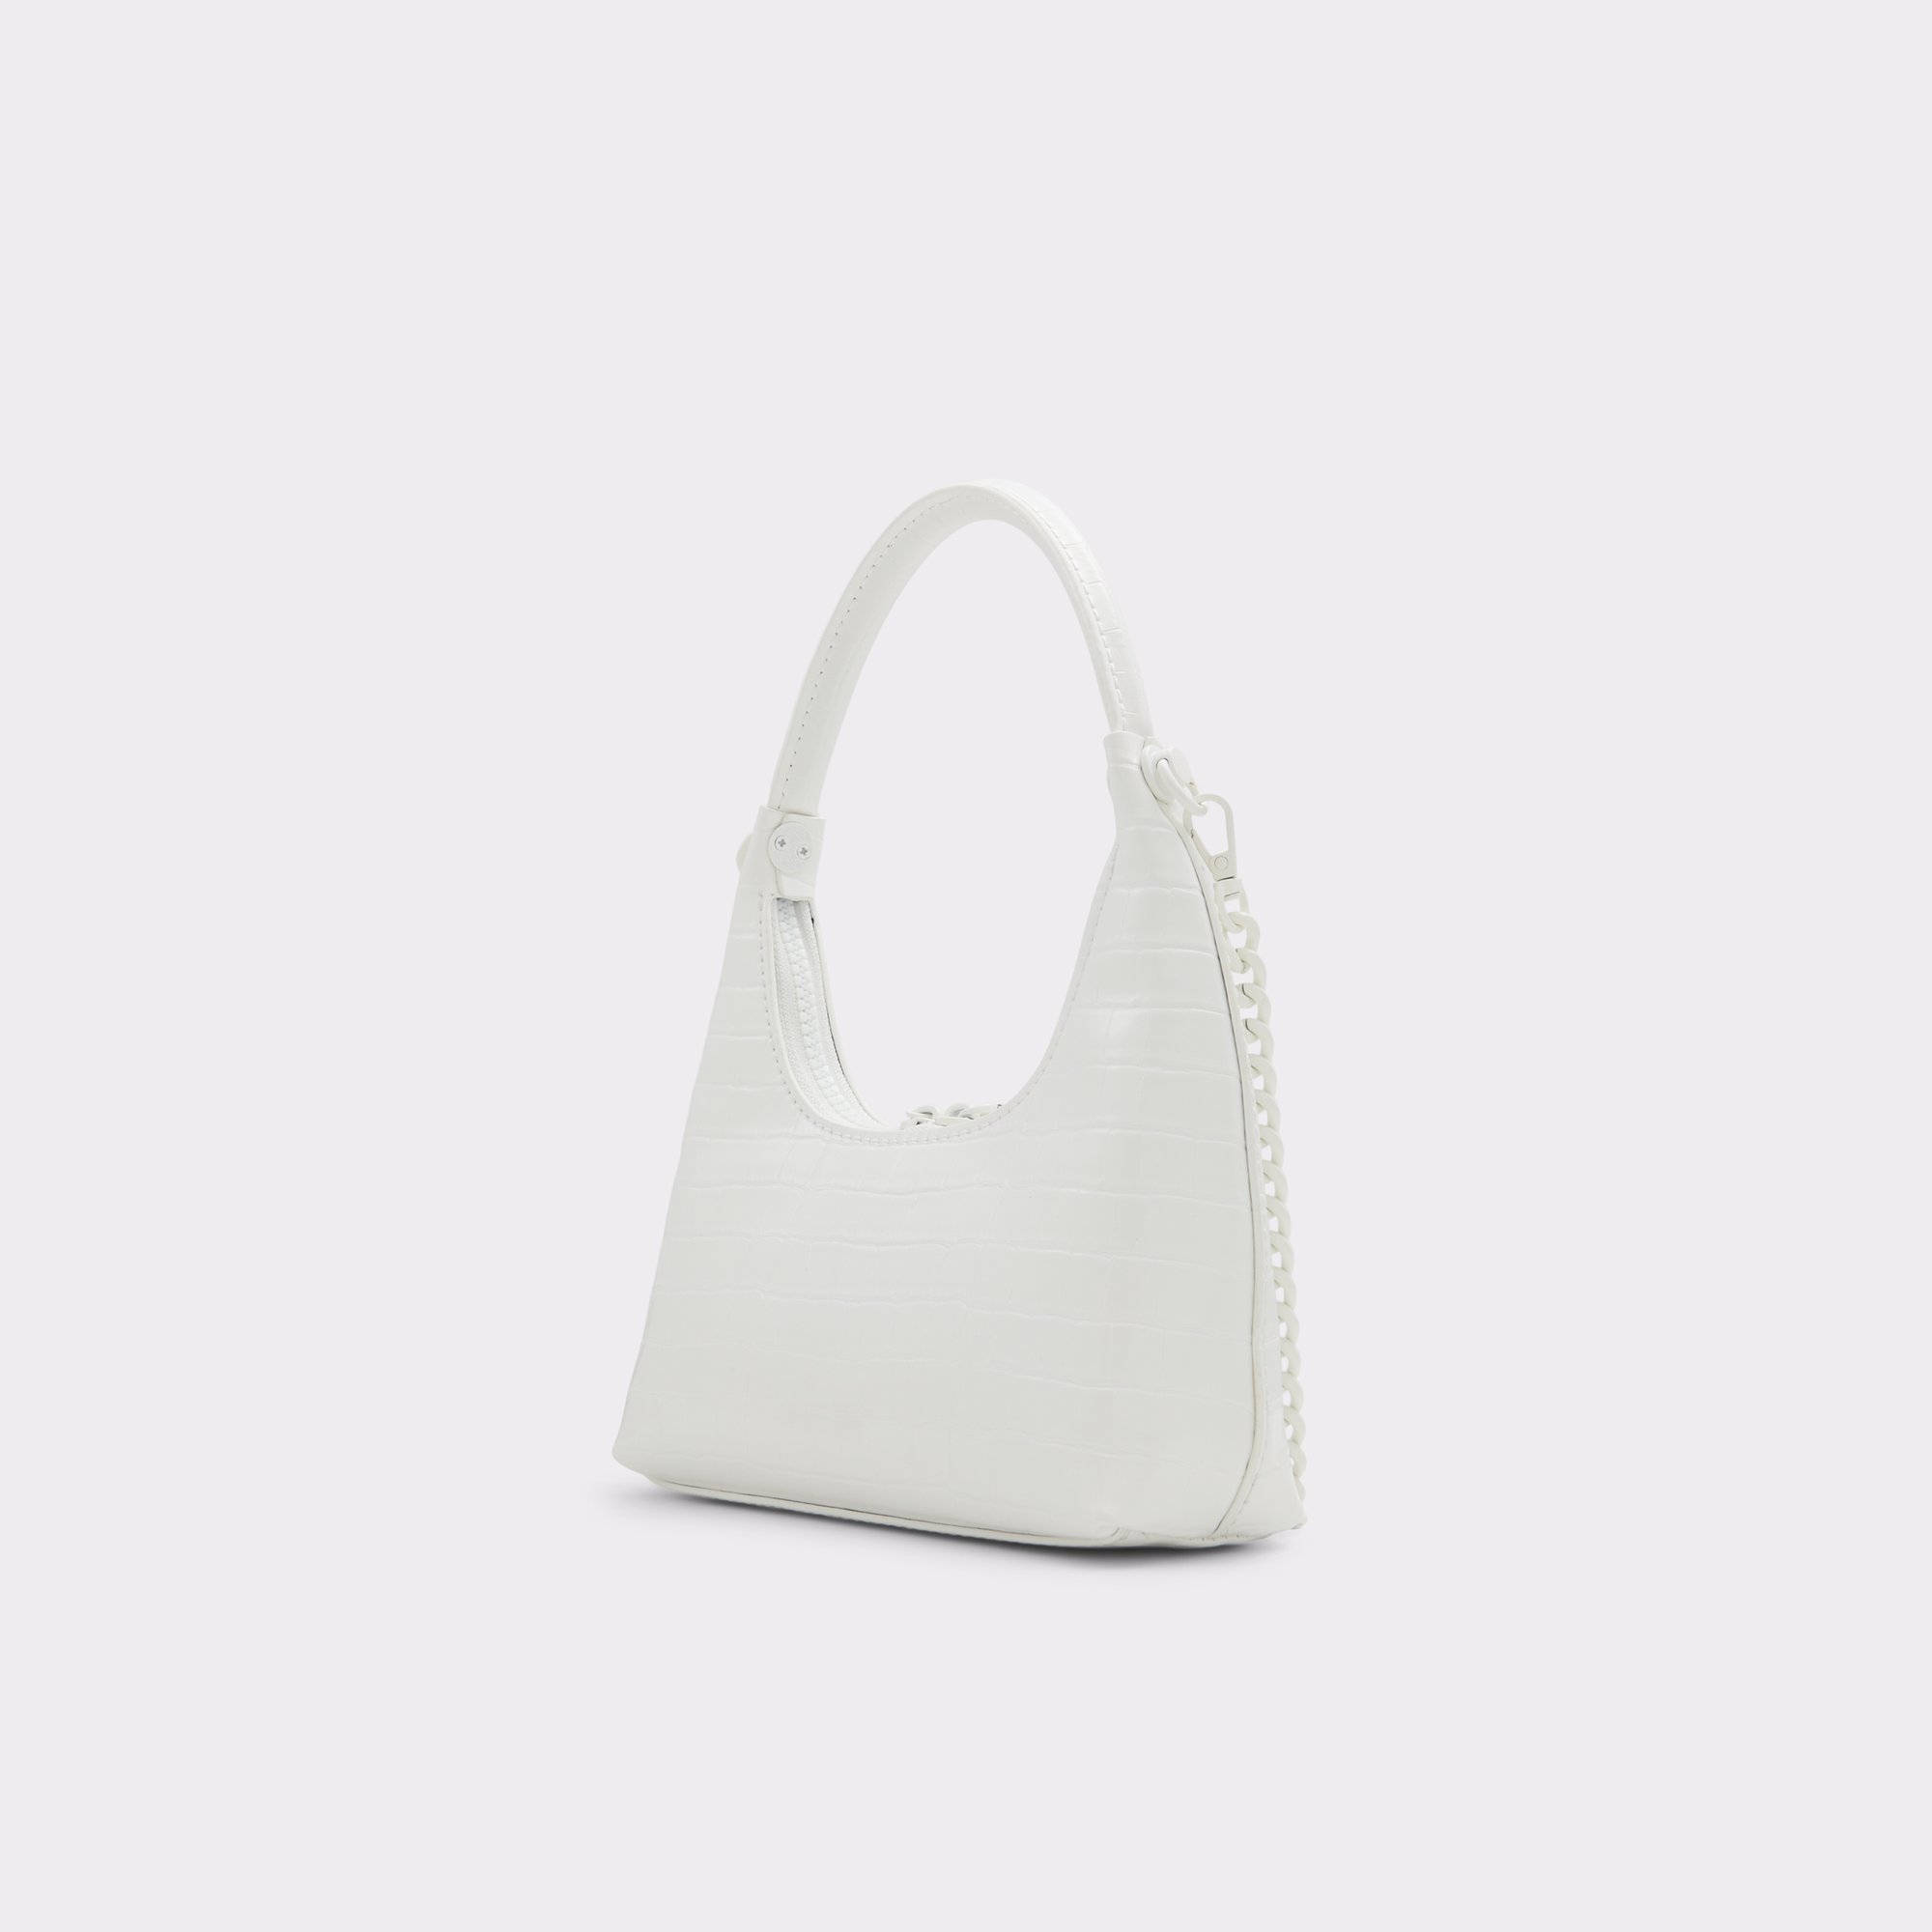 BY FAR: Off-White Croc Amber Shoulder Bag